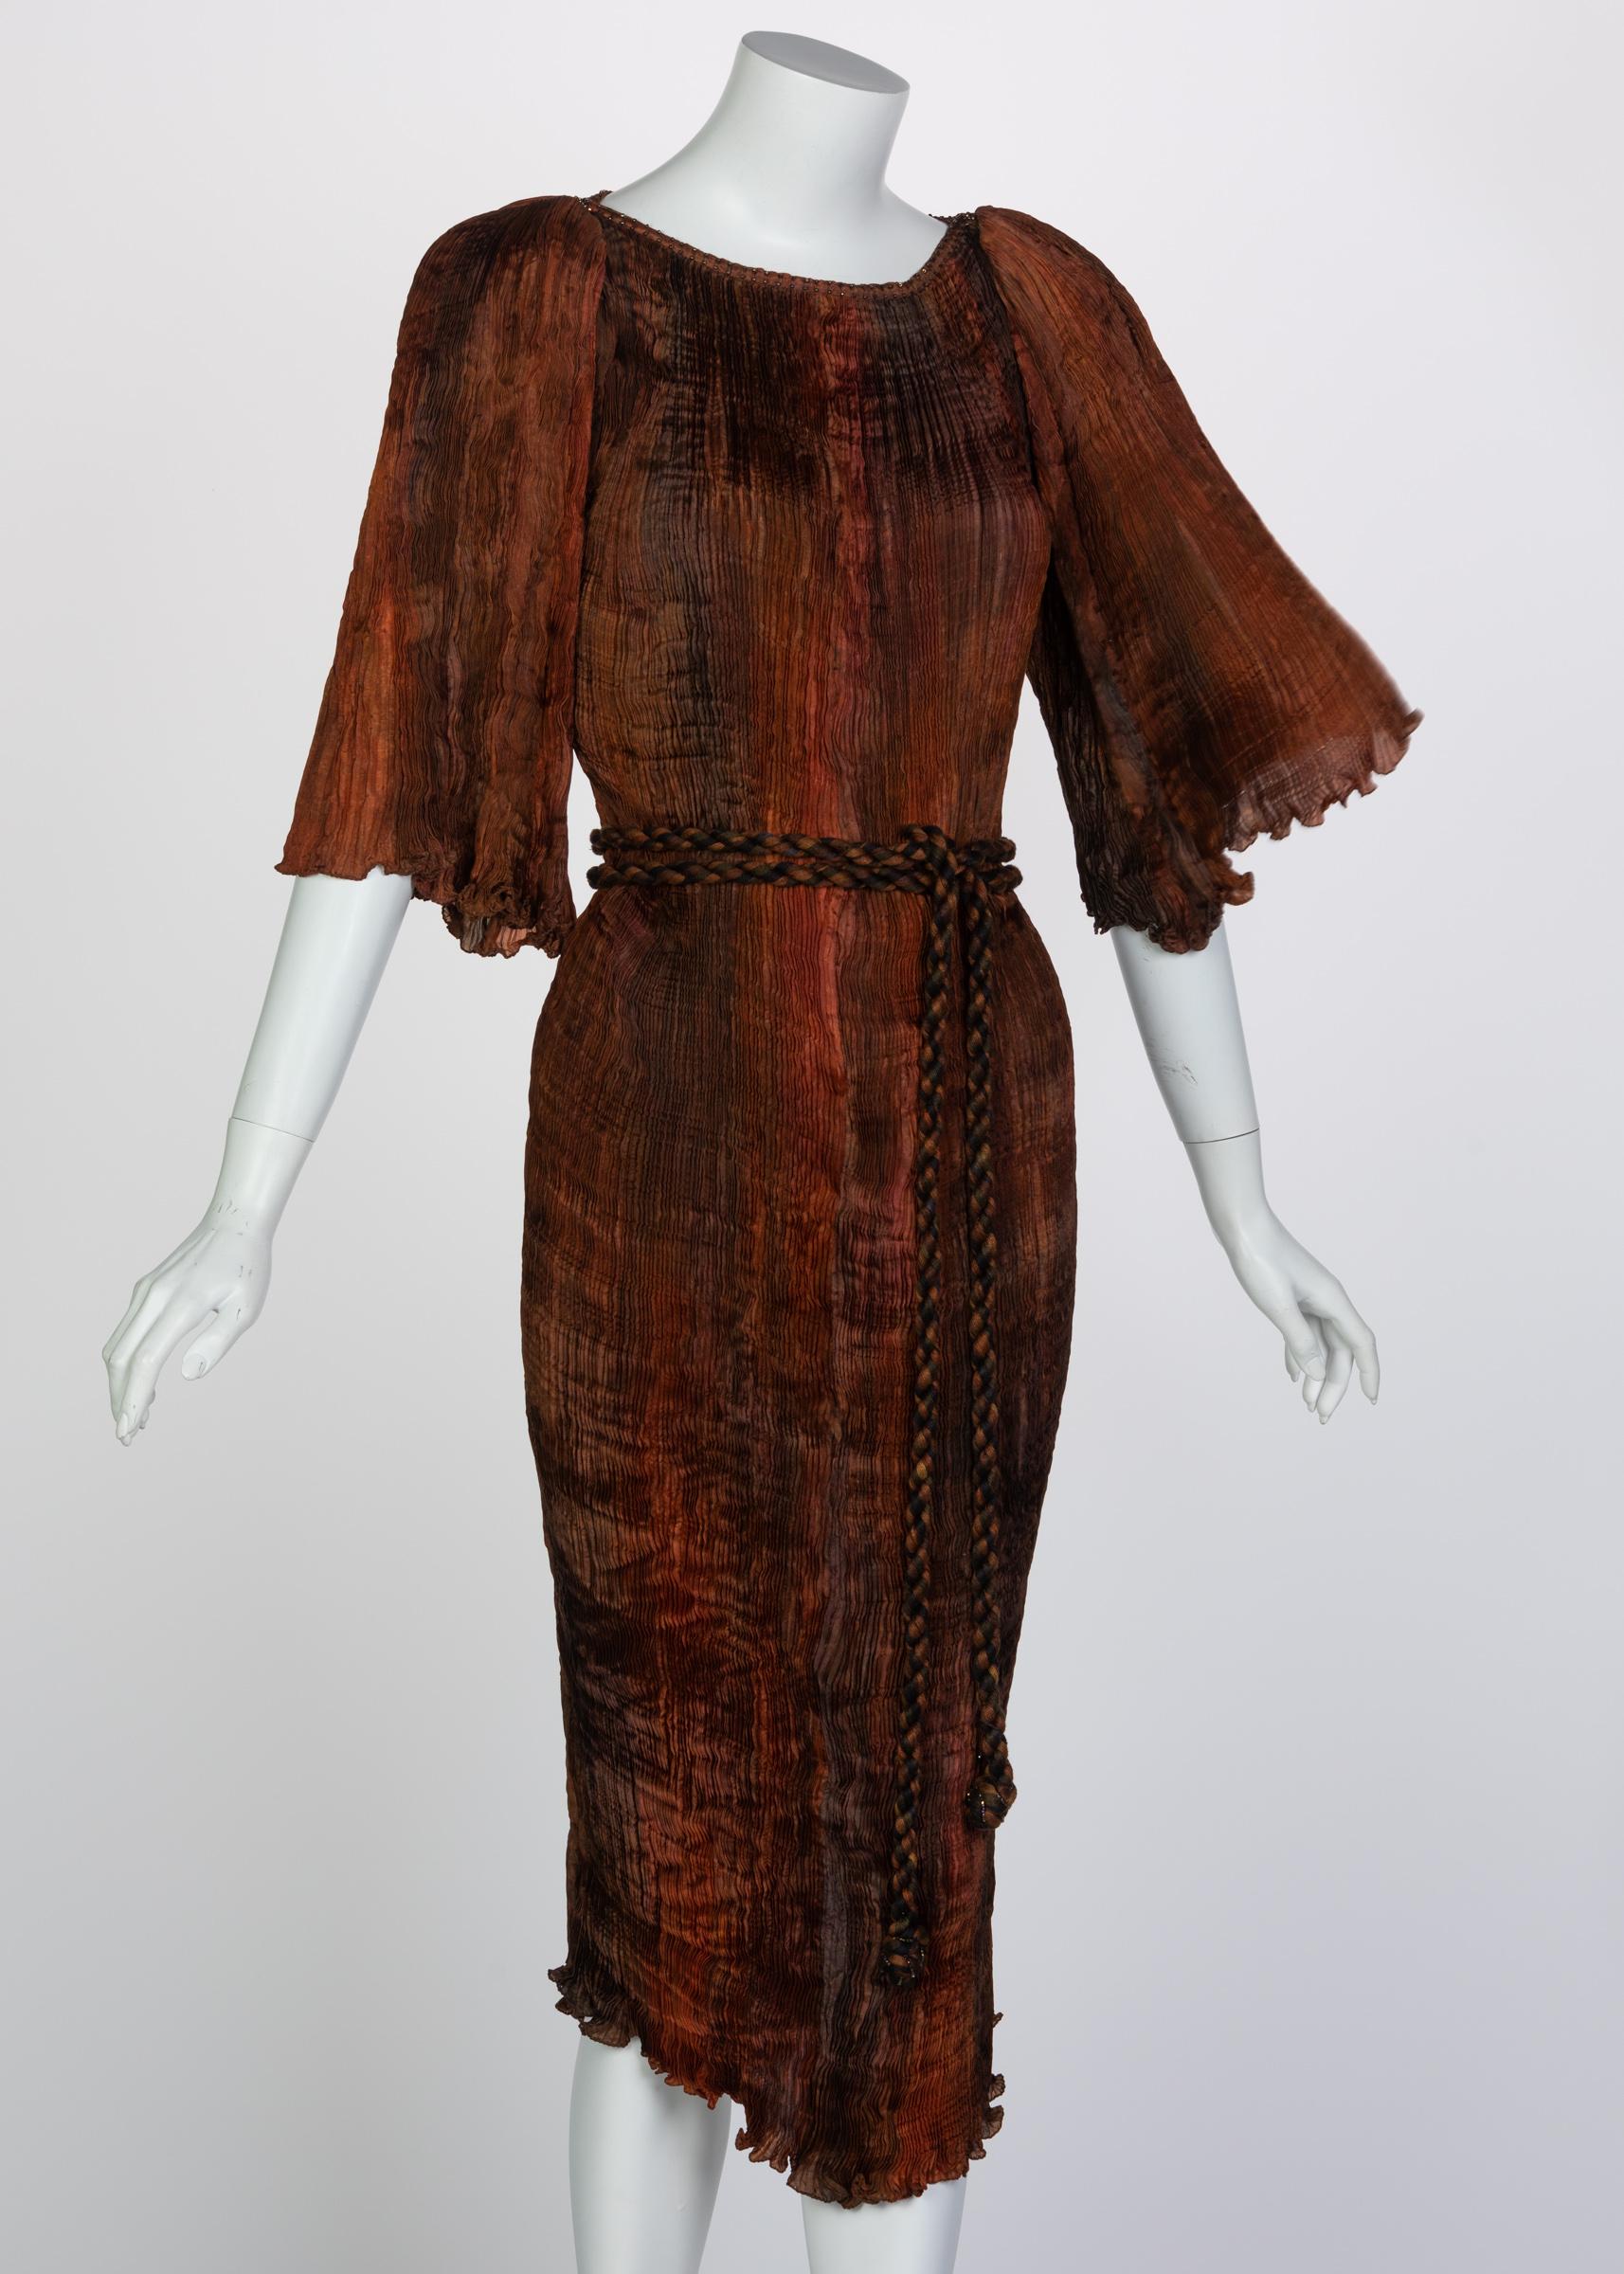 Patricia Lester begann mit der Schneiderei, um stilvolle und anspruchsvolle Kleider für Frauen aller Größen herzustellen. Inspiriert von Blumen, Kunst und Natur, vermitteln Lesters Kreationen ein Gefühl von Weiblichkeit mit einer klassischen